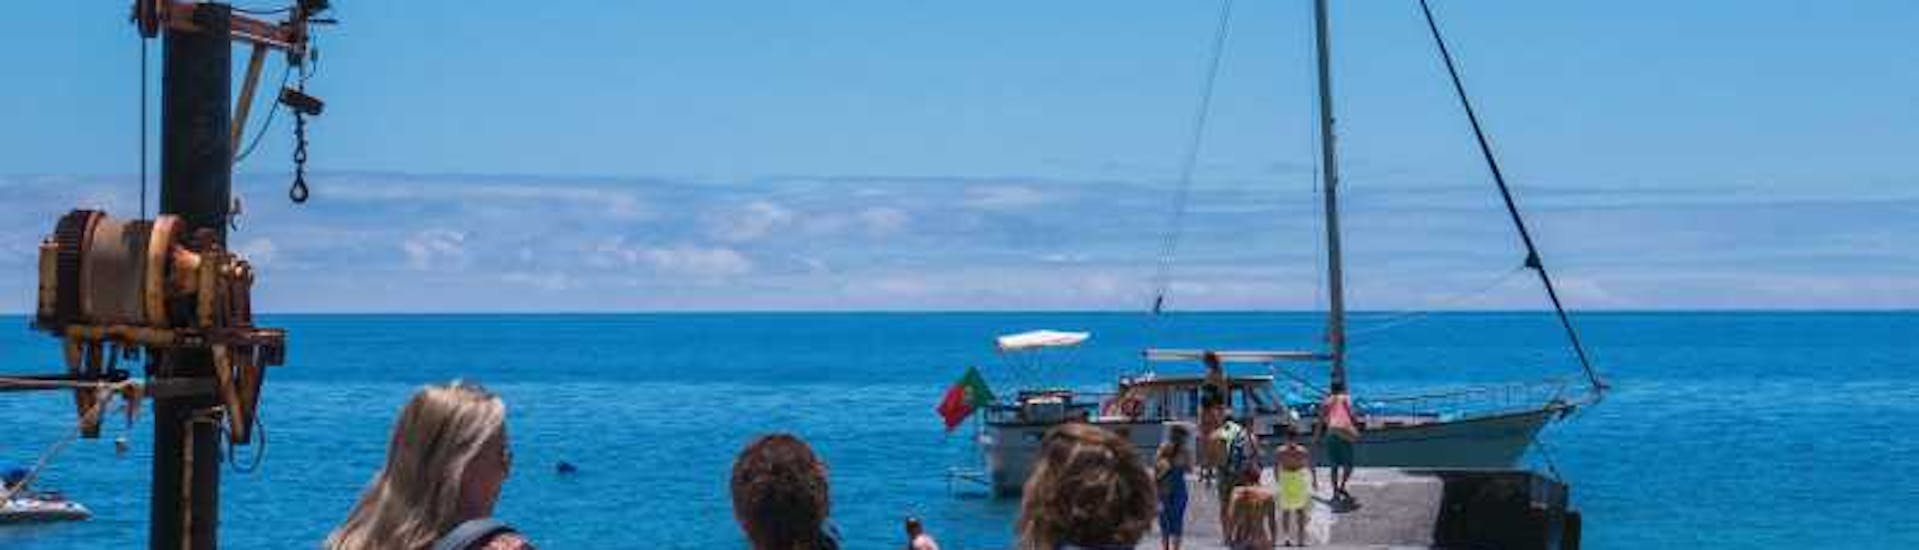 Gita in barca a vela da Funchal a Calhau da Lapa  e bagno in mare.